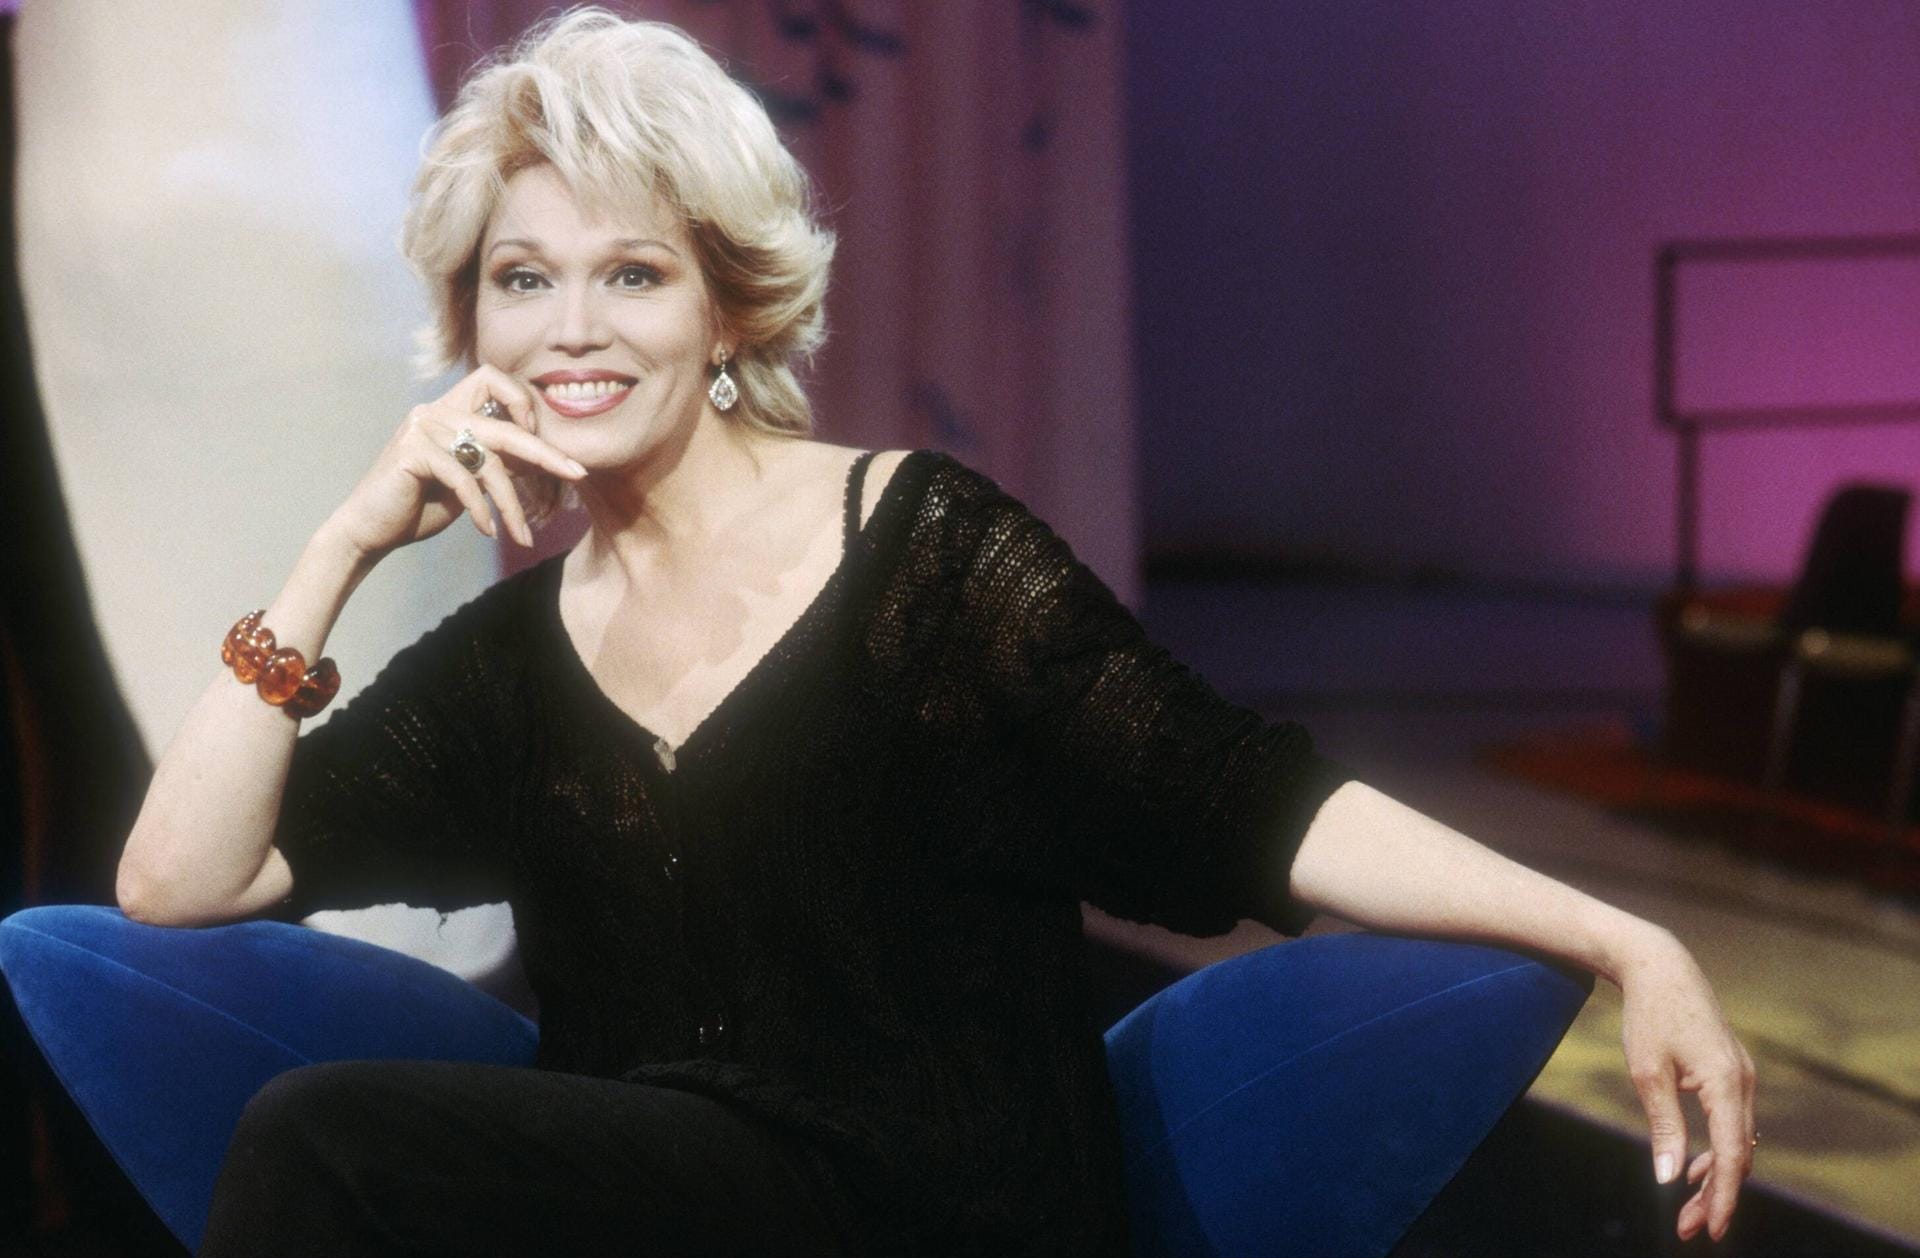 Von Mai 1995 bis Mai 1996 moderiert Lear die ersten 39 Folgen des Erotikformats auf RTL2. Verona Pooth (damals noch Feldbusch) löst sie als Moderatorin ab.